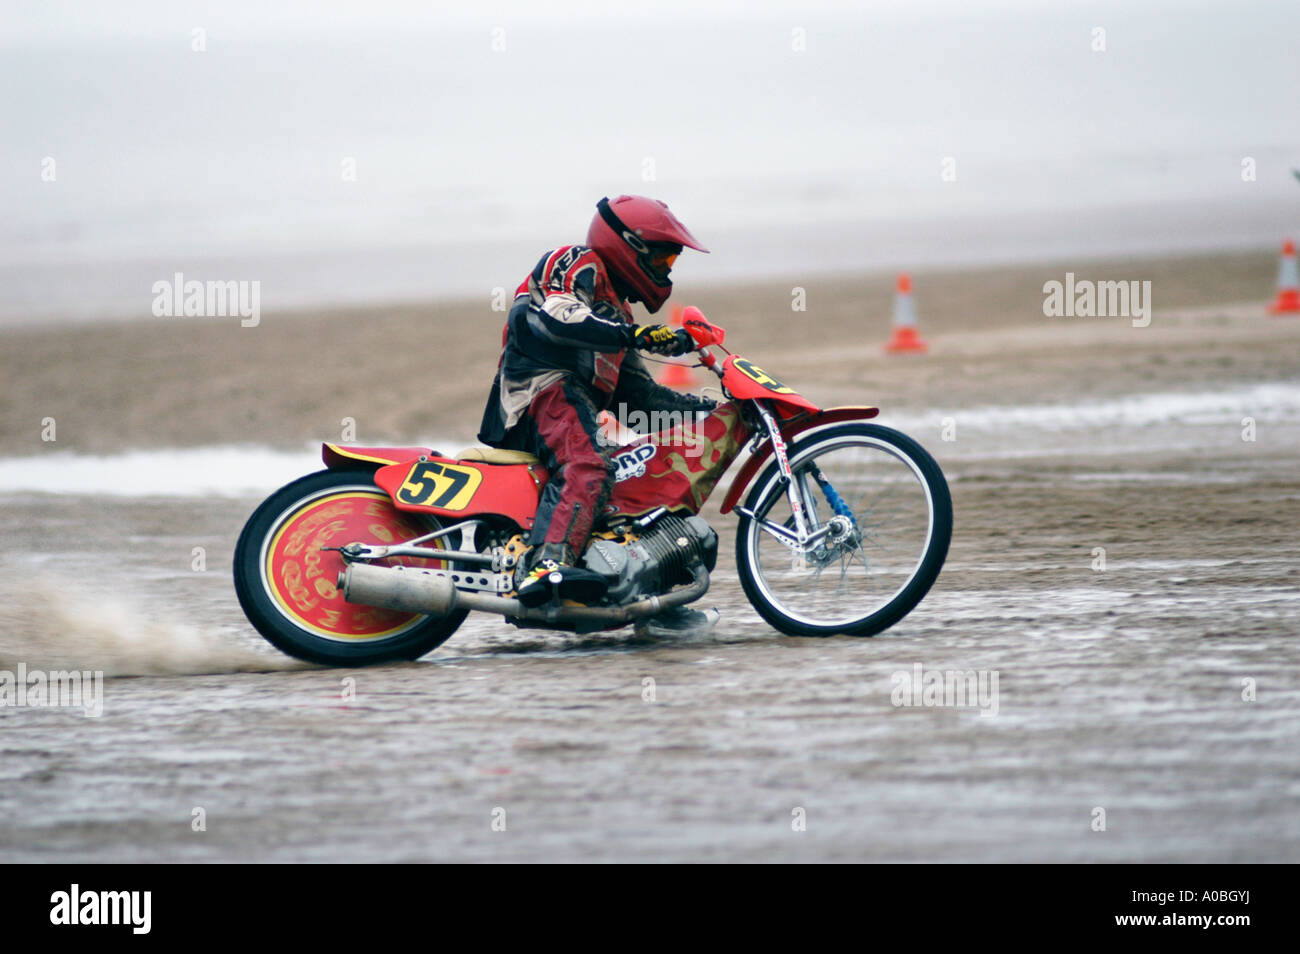 Sand Racer auf Jawa Speedway Motorrad Sand Rennen an einem Strand in  England Stockfotografie - Alamy